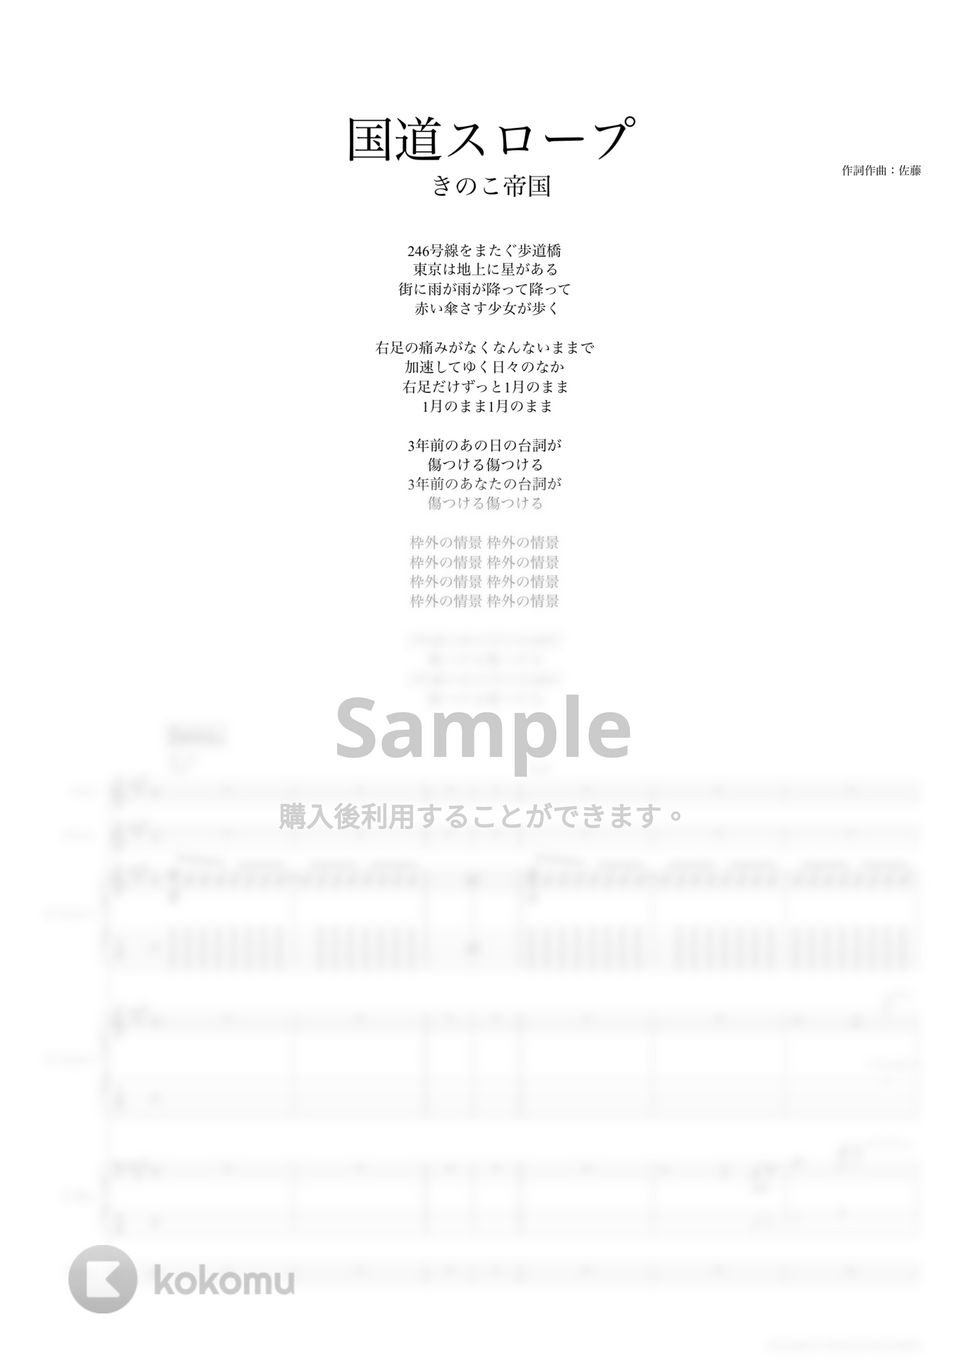 きのこ帝国 - 国道スロープ (バンドスコア) by TRIAD GUITAR SCHOOL